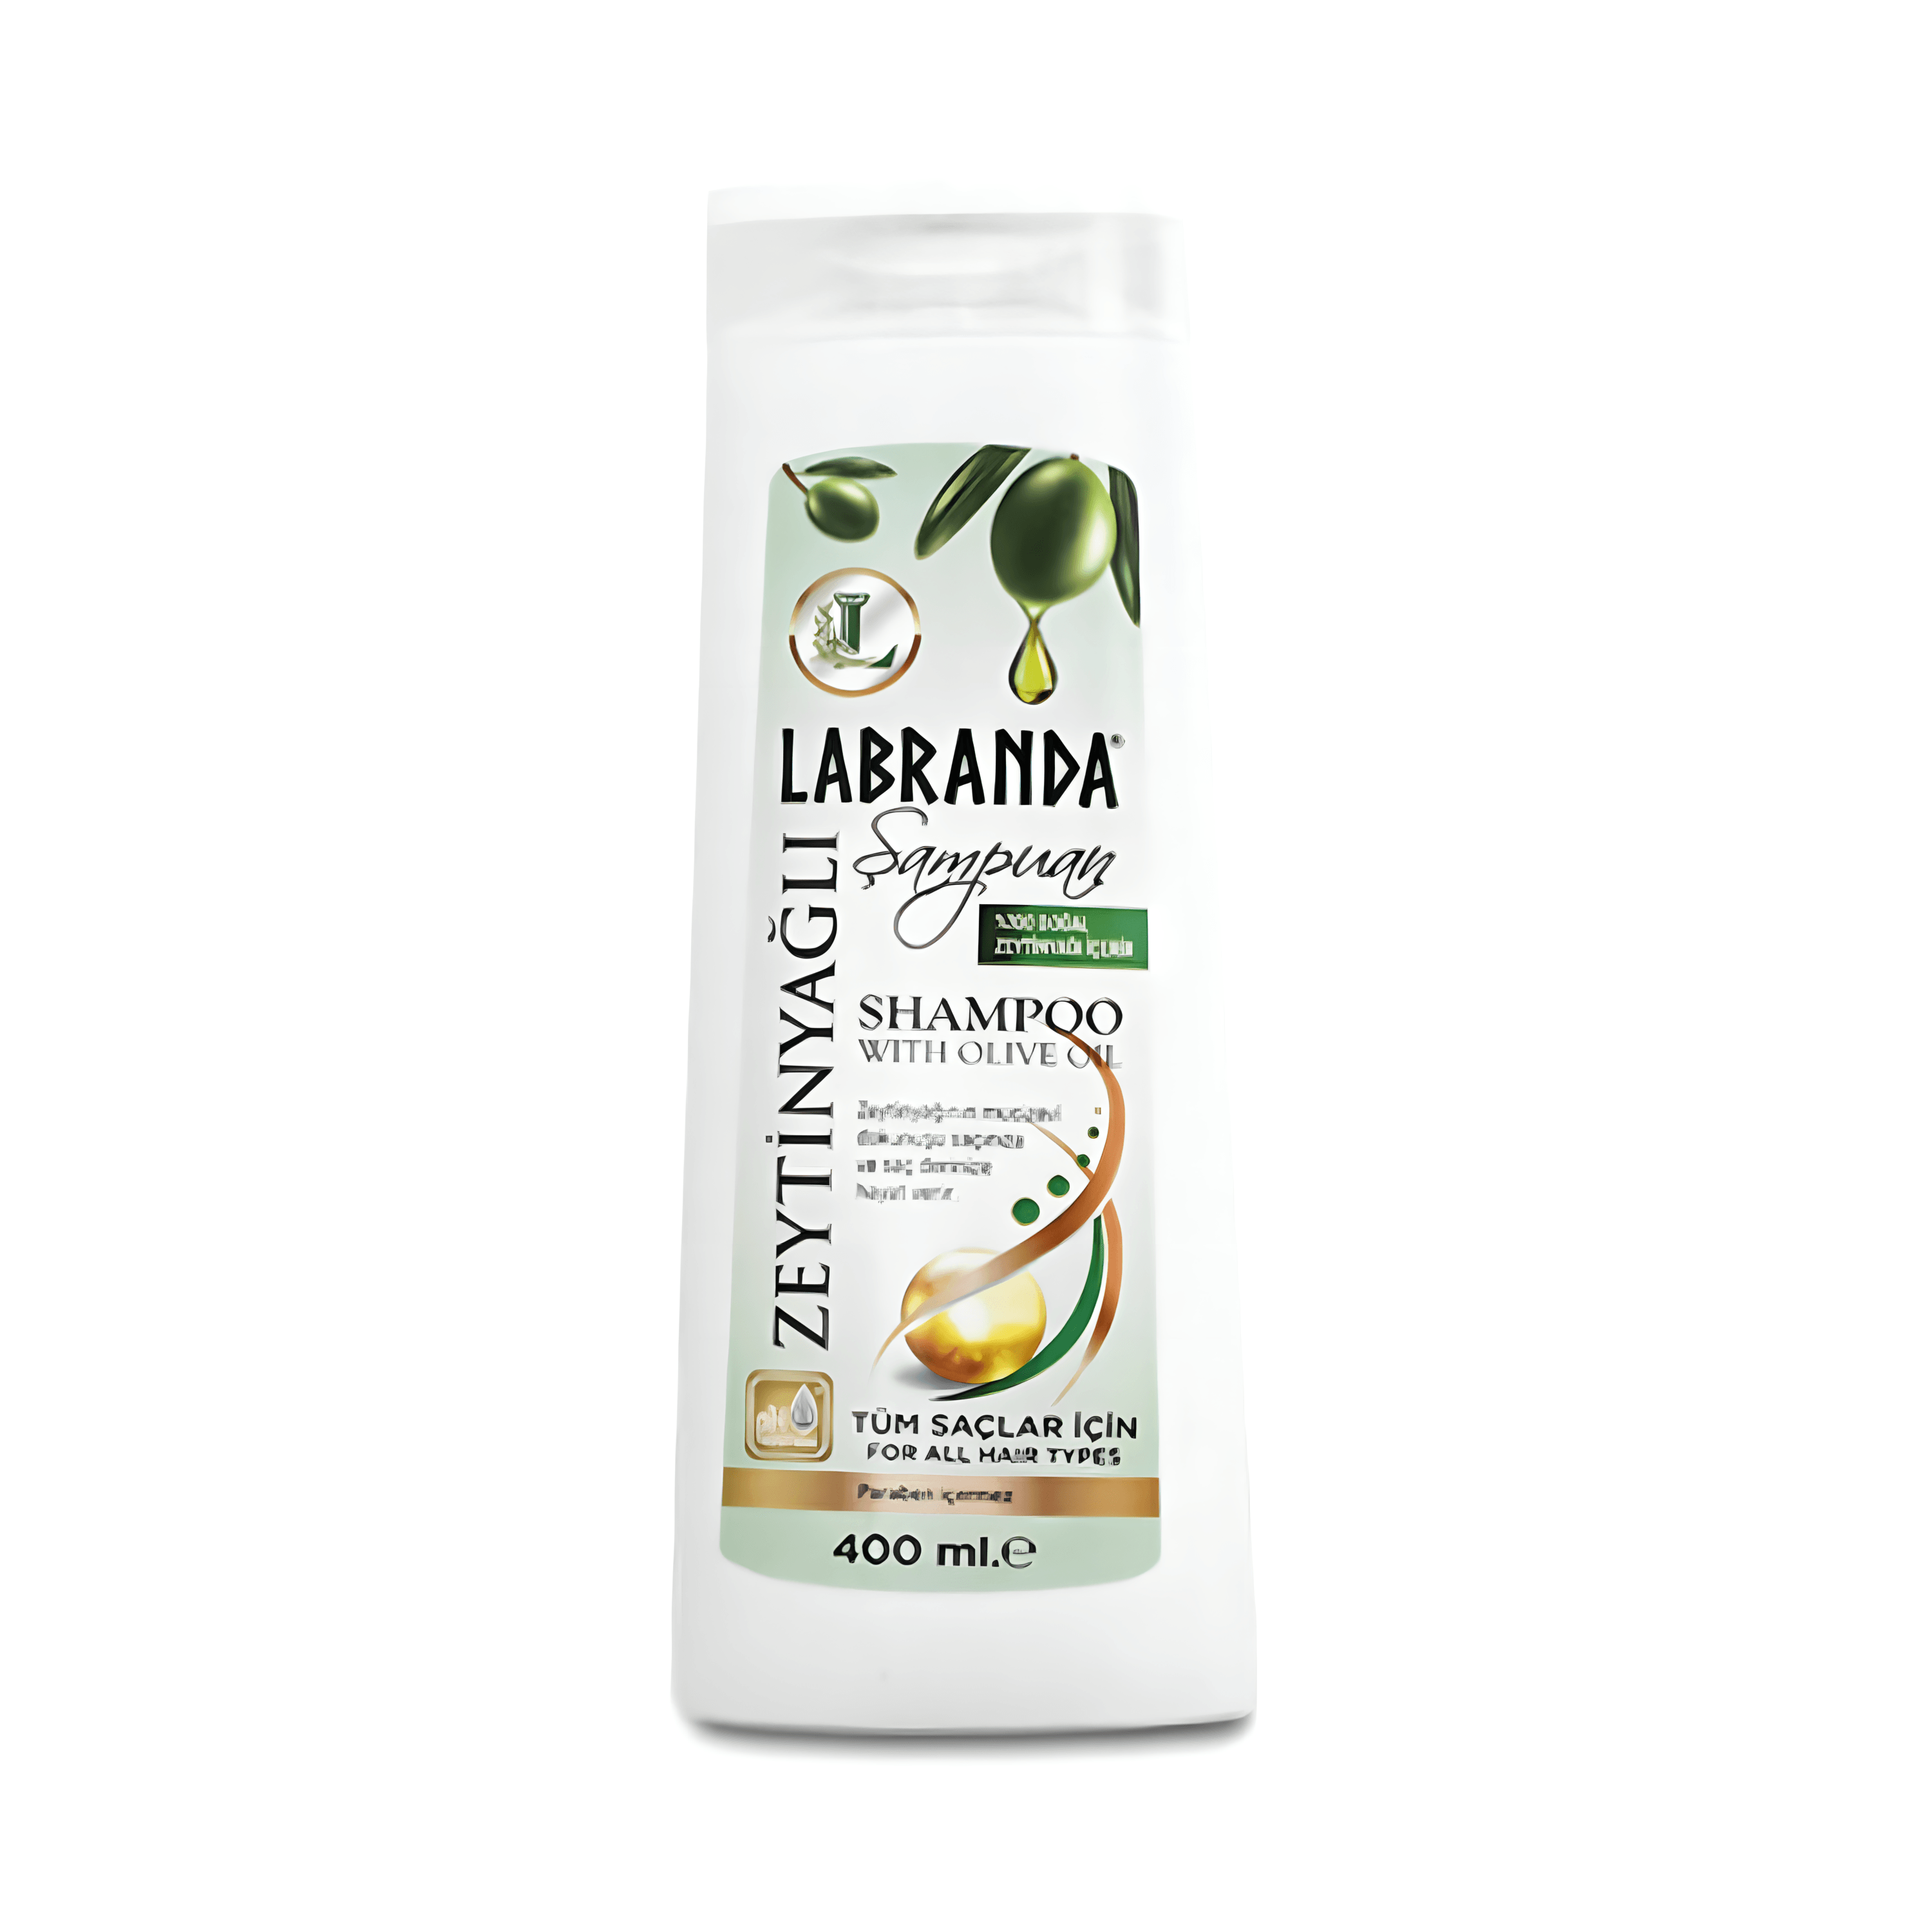 Labranda Zeytinyağlı Doğal Şampuan - 400 ml - Besleyici ve Yumuşatıcı